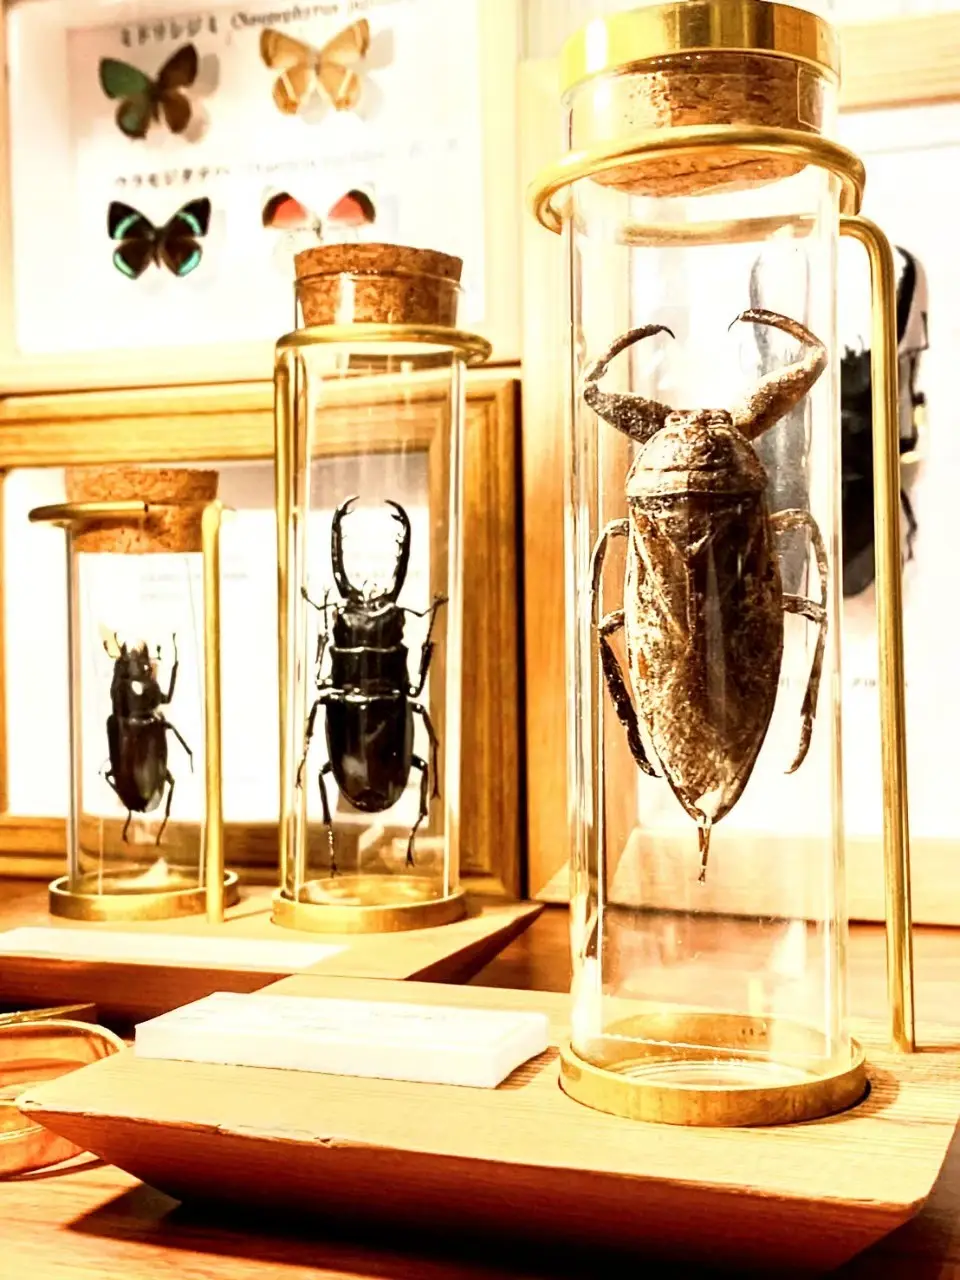 昆虫標本がアートになってて凄い | 昆虫標本専門店 苔丸インテリアが